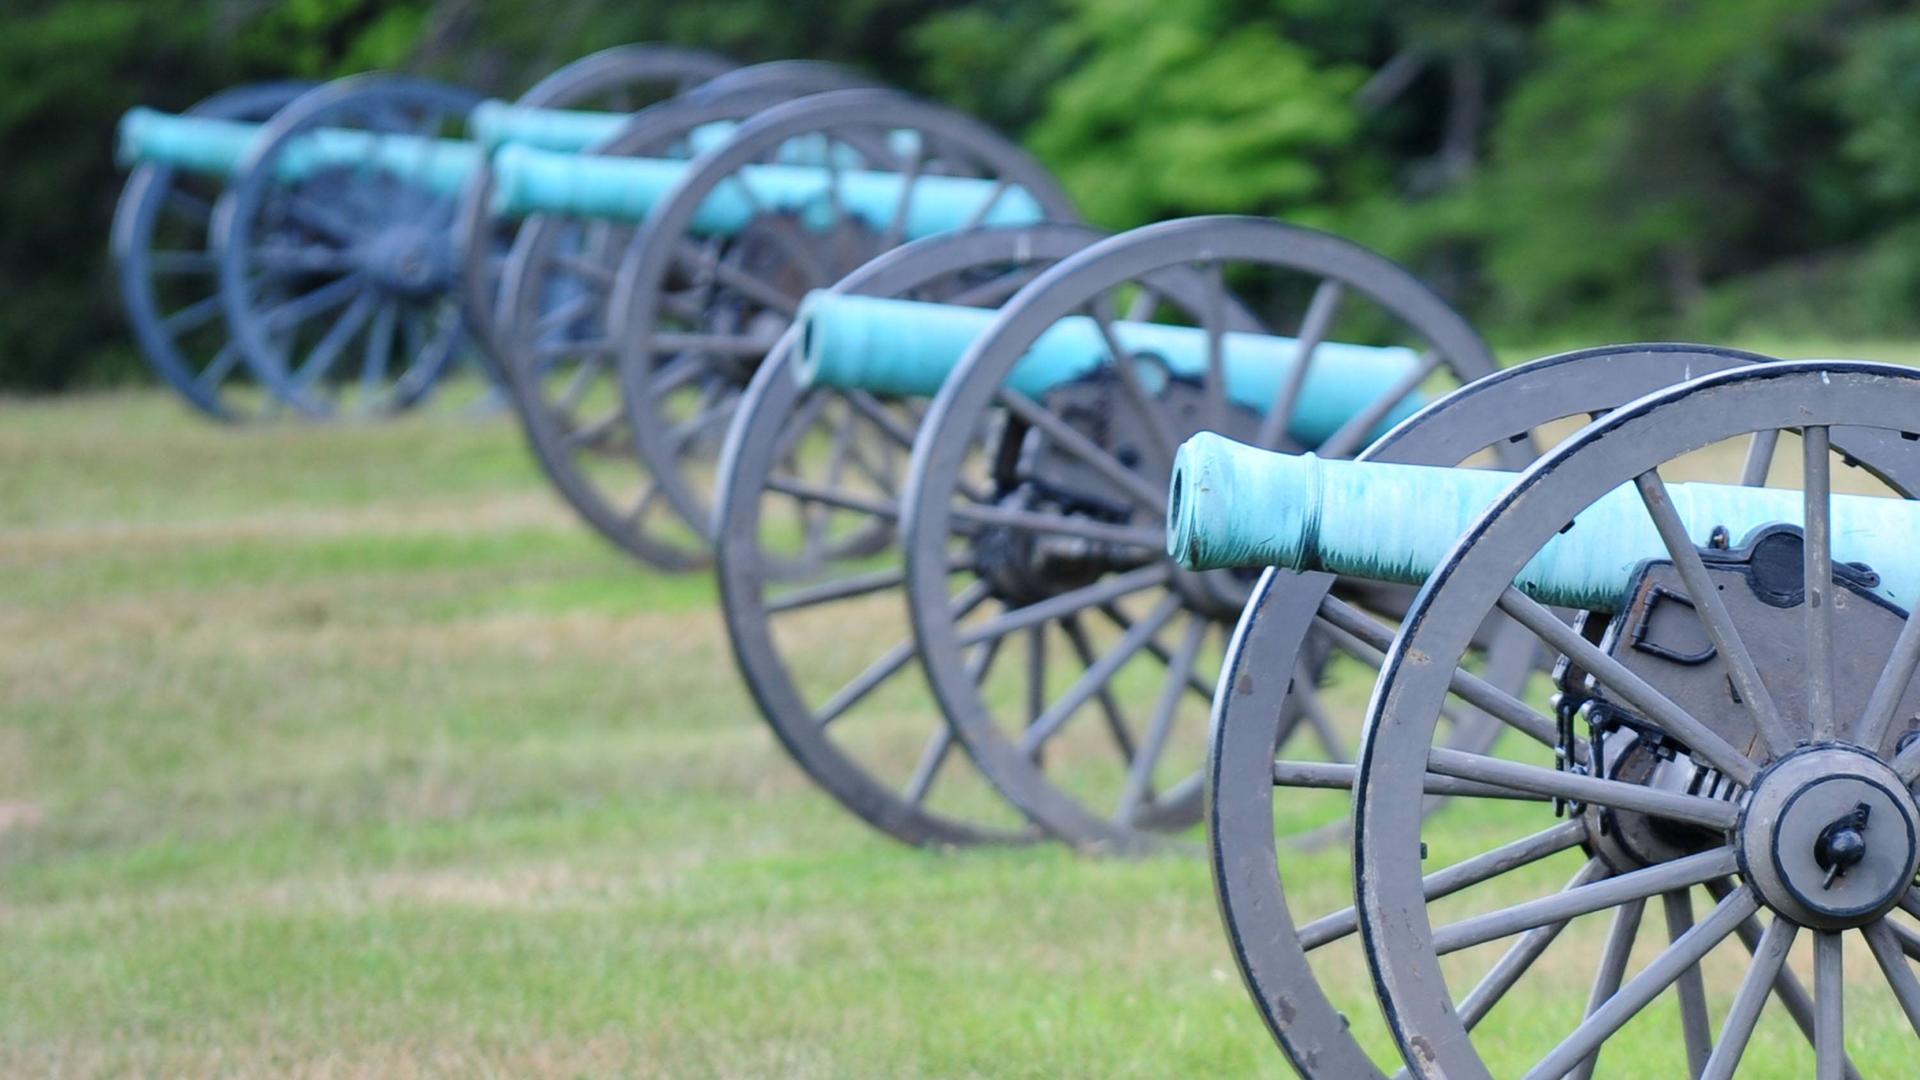 Kanonen auf Rädern mit türkisfarbener Patina stehen hintereinander auf einer Wiese.